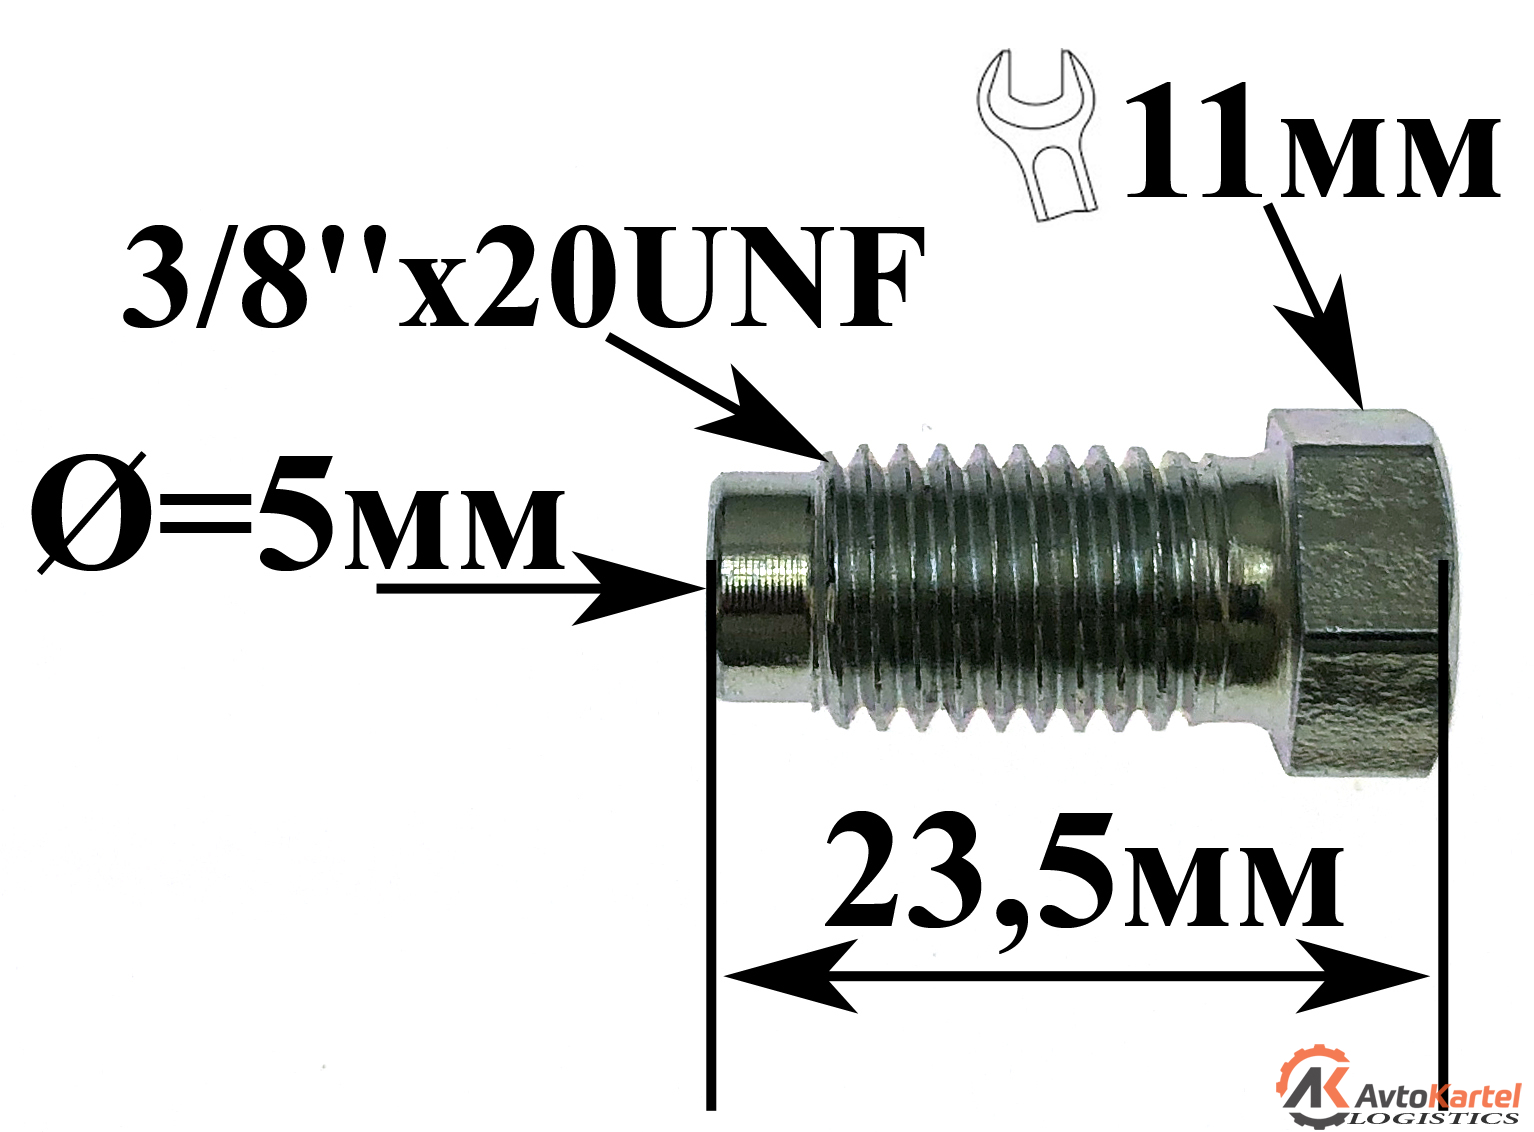 Штуцер тормозной 3-8''x20UNF L=22,4 mm, S=11, D=5 mm